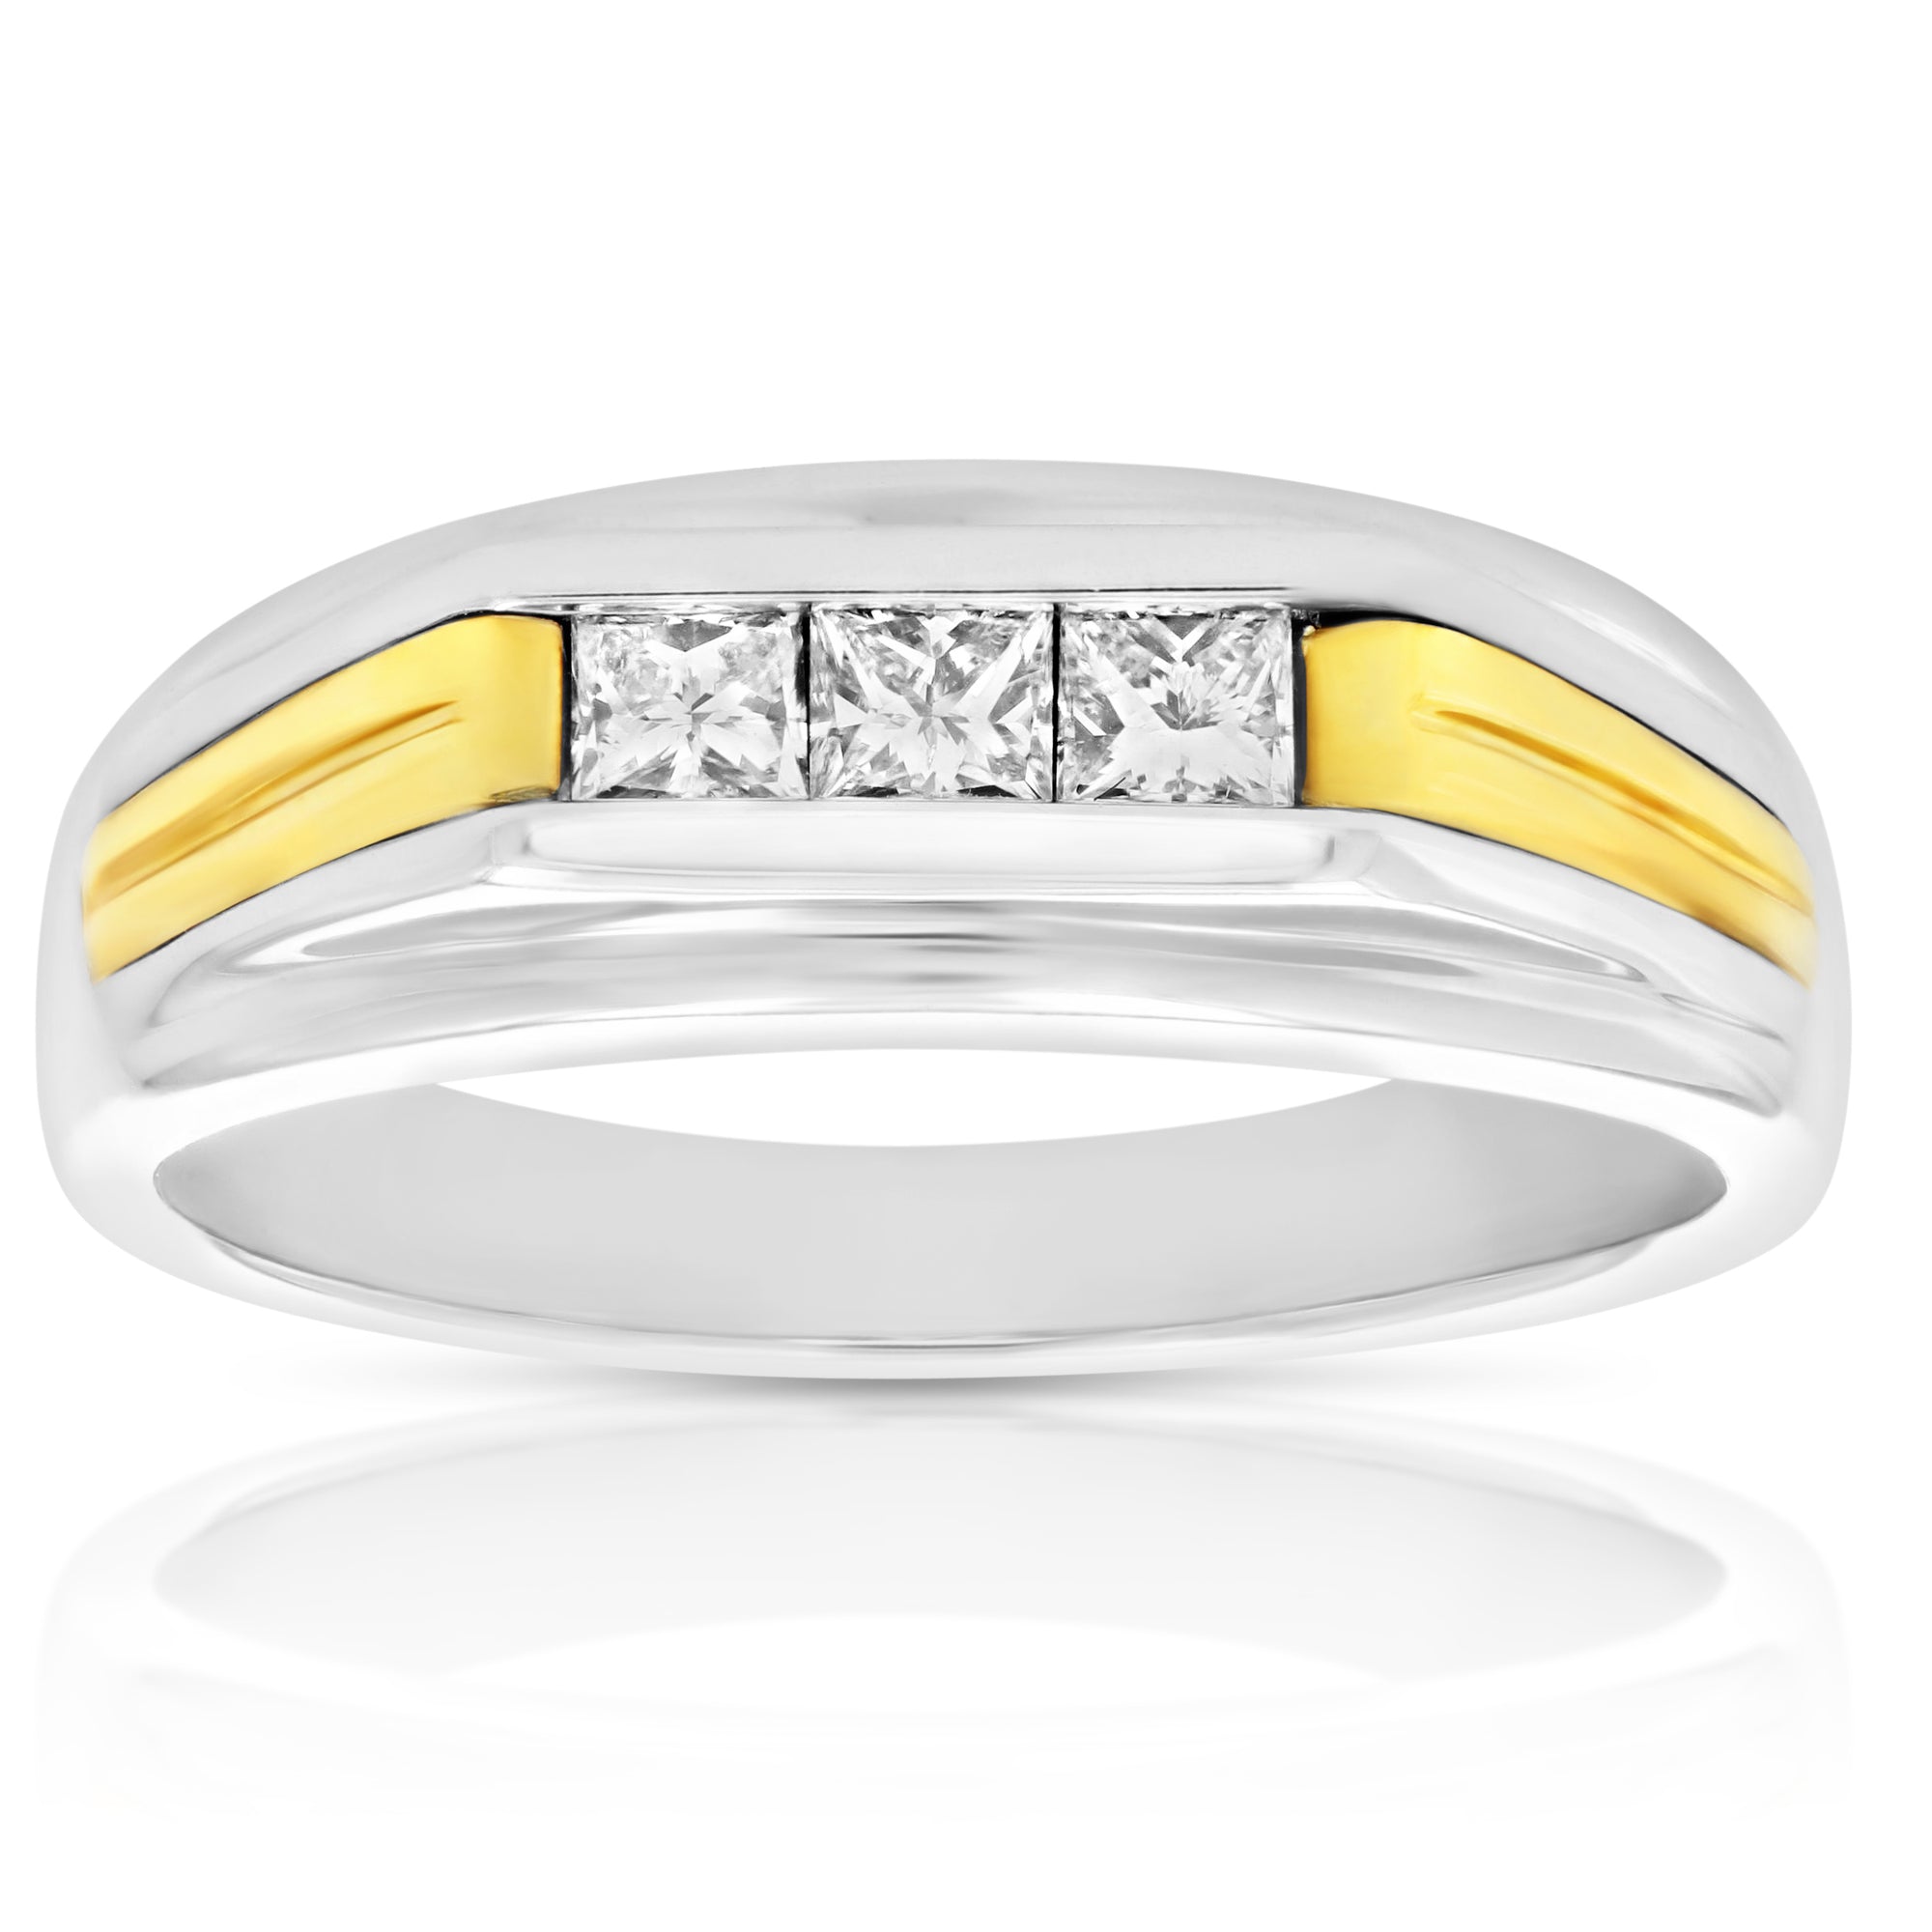 2/5 cttw Men's Diamond Ring 14K White Gold Size 10